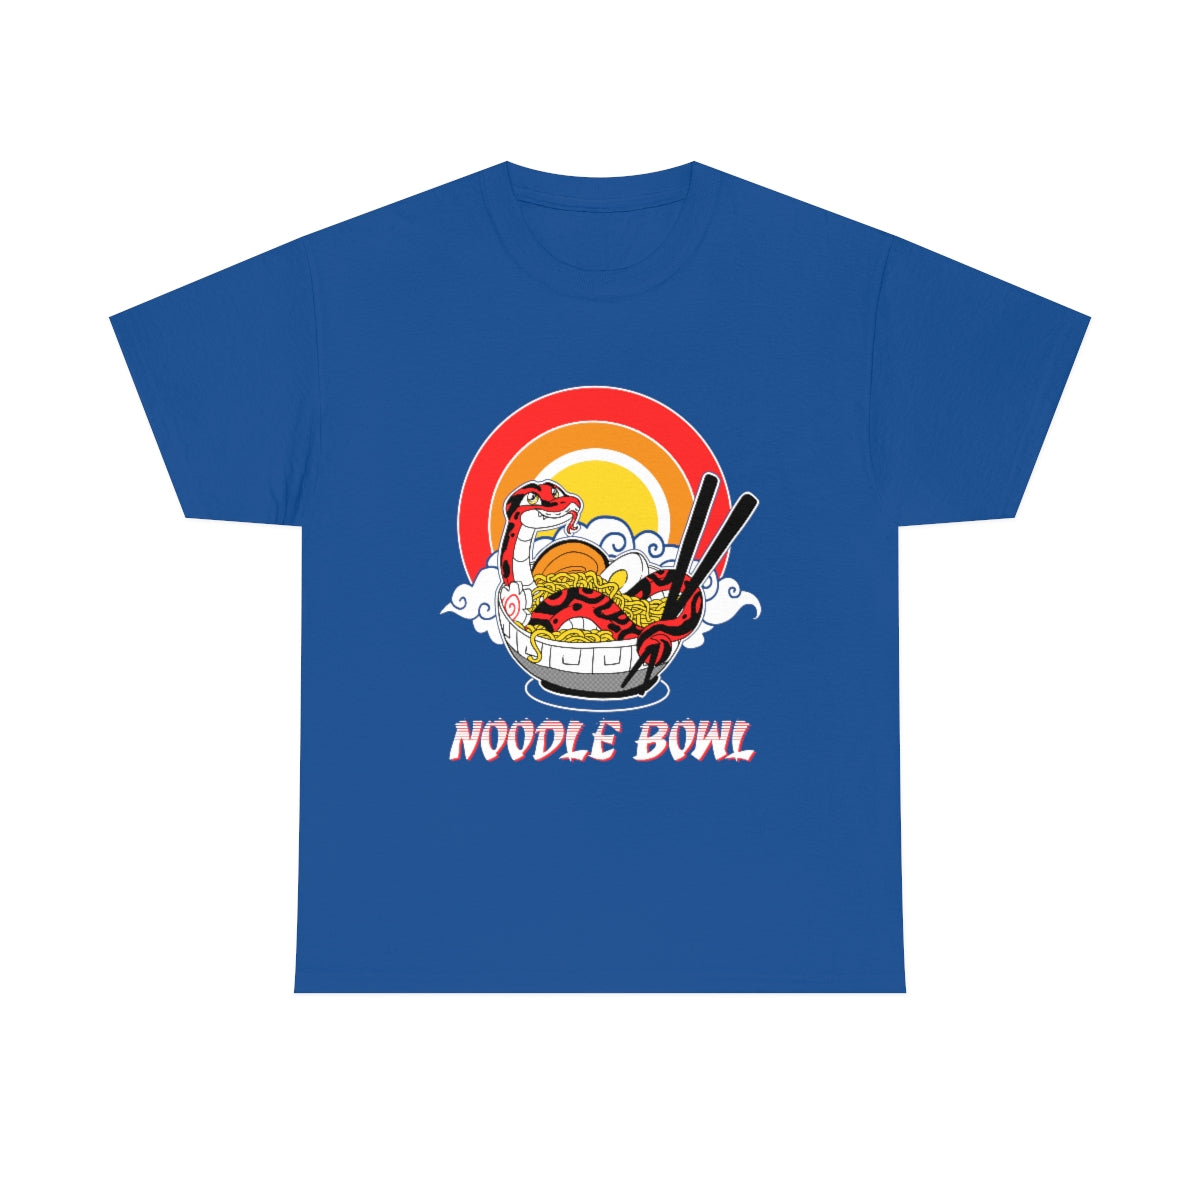 Noodle Bowl - T-Shirt T-Shirt Crunchy Crowe Royal Blue S 